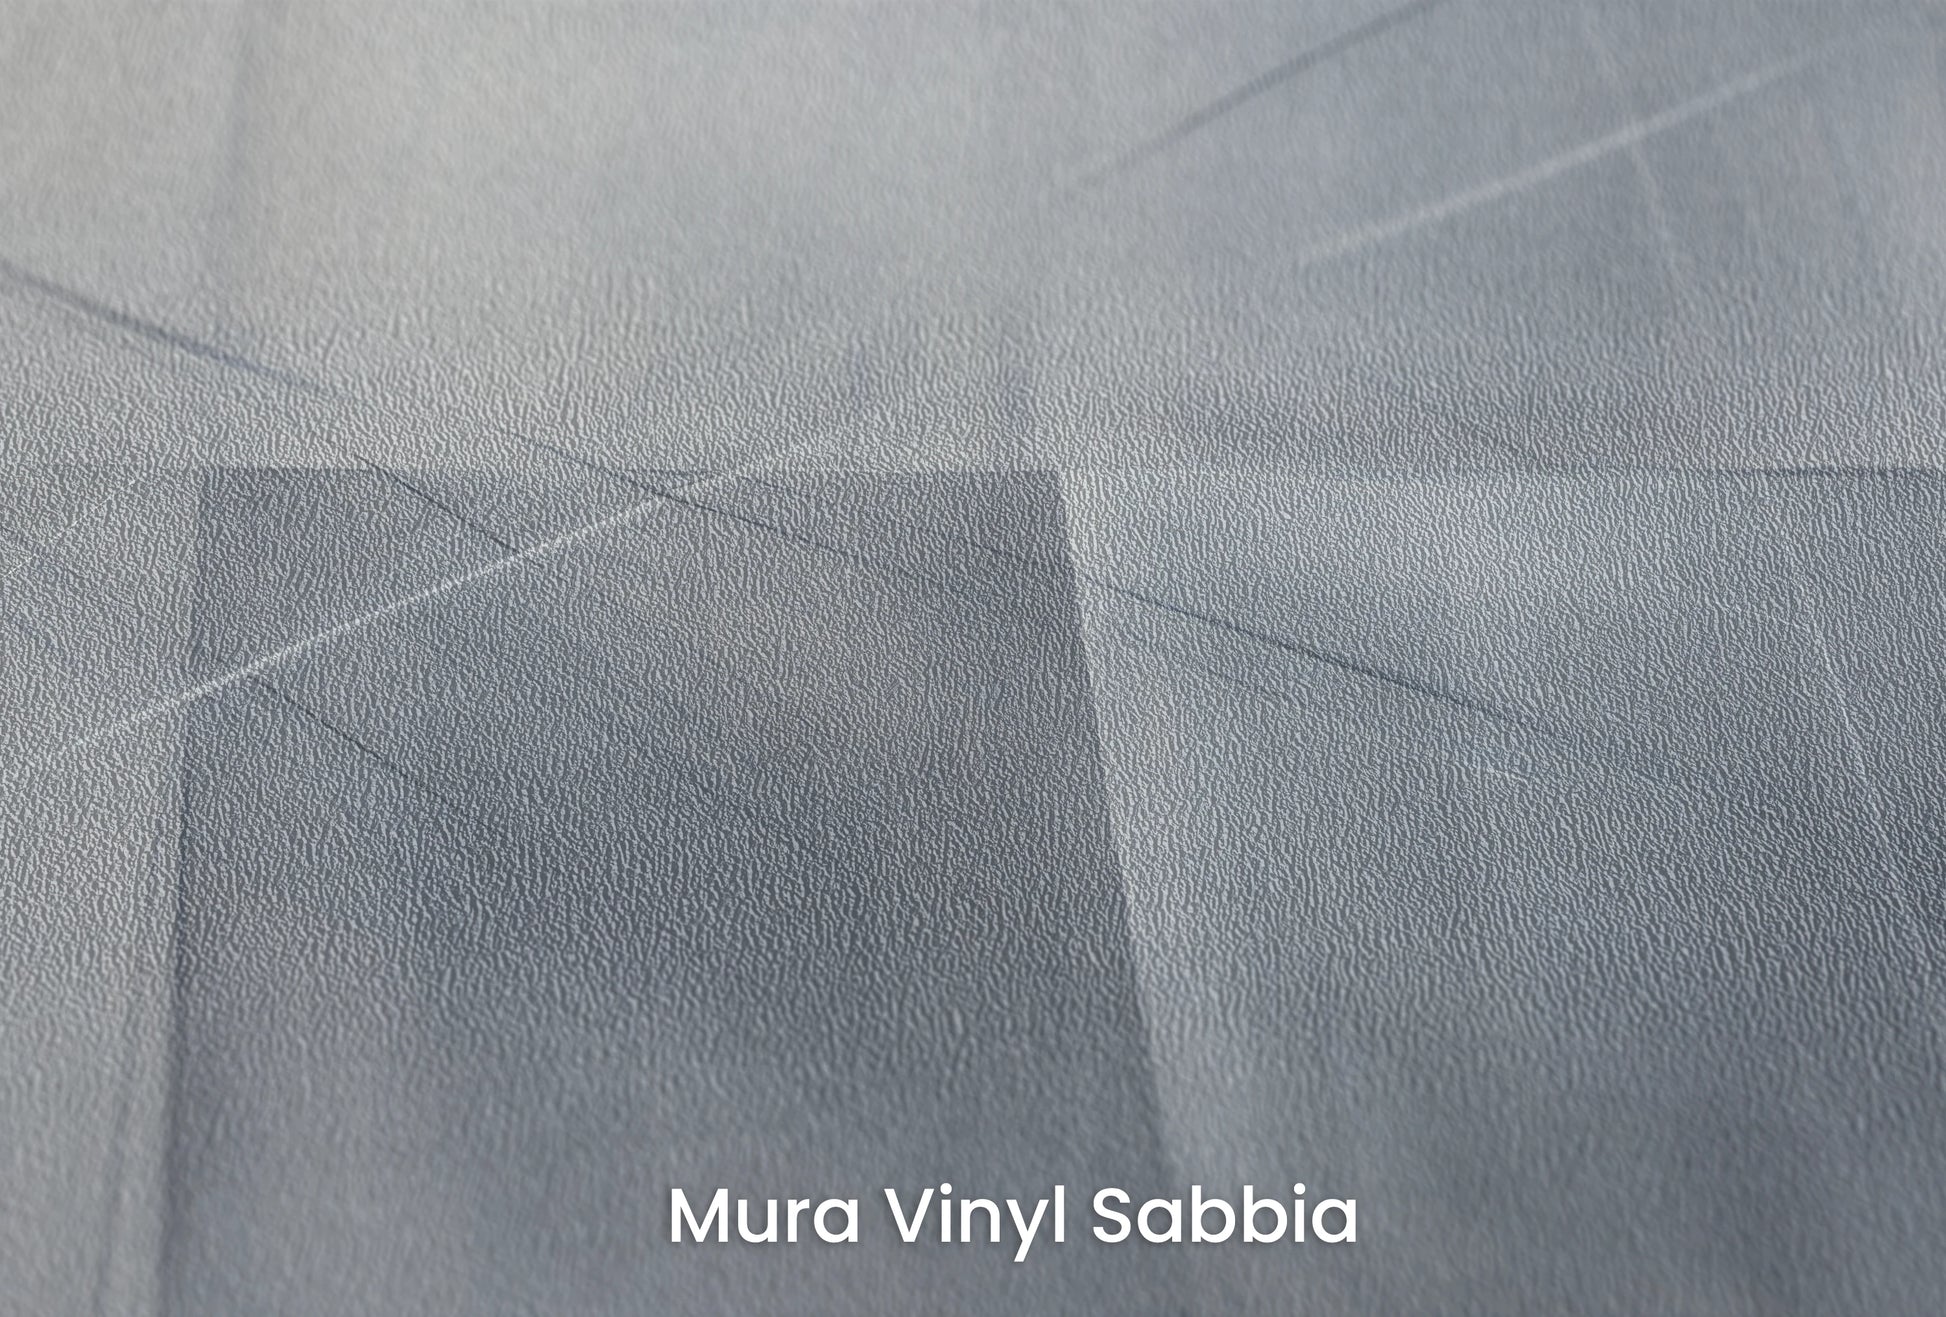 Zbliżenie na artystyczną fototapetę o nazwie Urban Scape na podłożu Mura Vinyl Sabbia struktura grubego ziarna piasku.